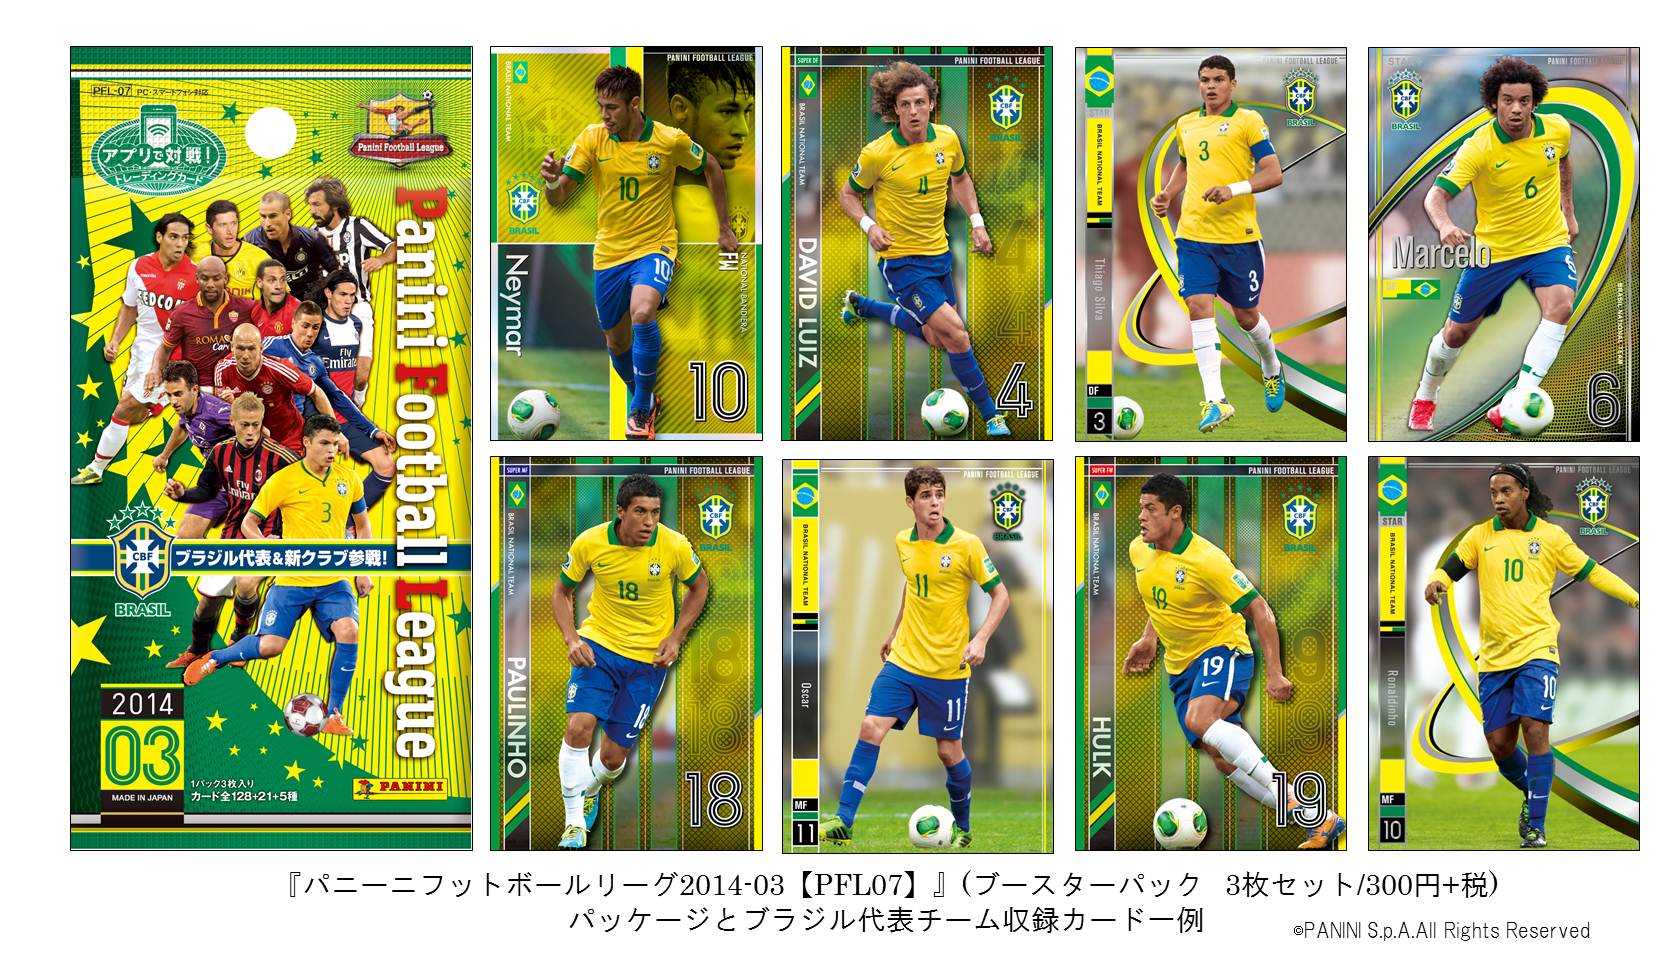 アプリで戦うワールドサッカーカードゲーム 『パニーニフットボールリーグ 2014-03[PFL07]』に サッカー王国 ブラジル代表参戦